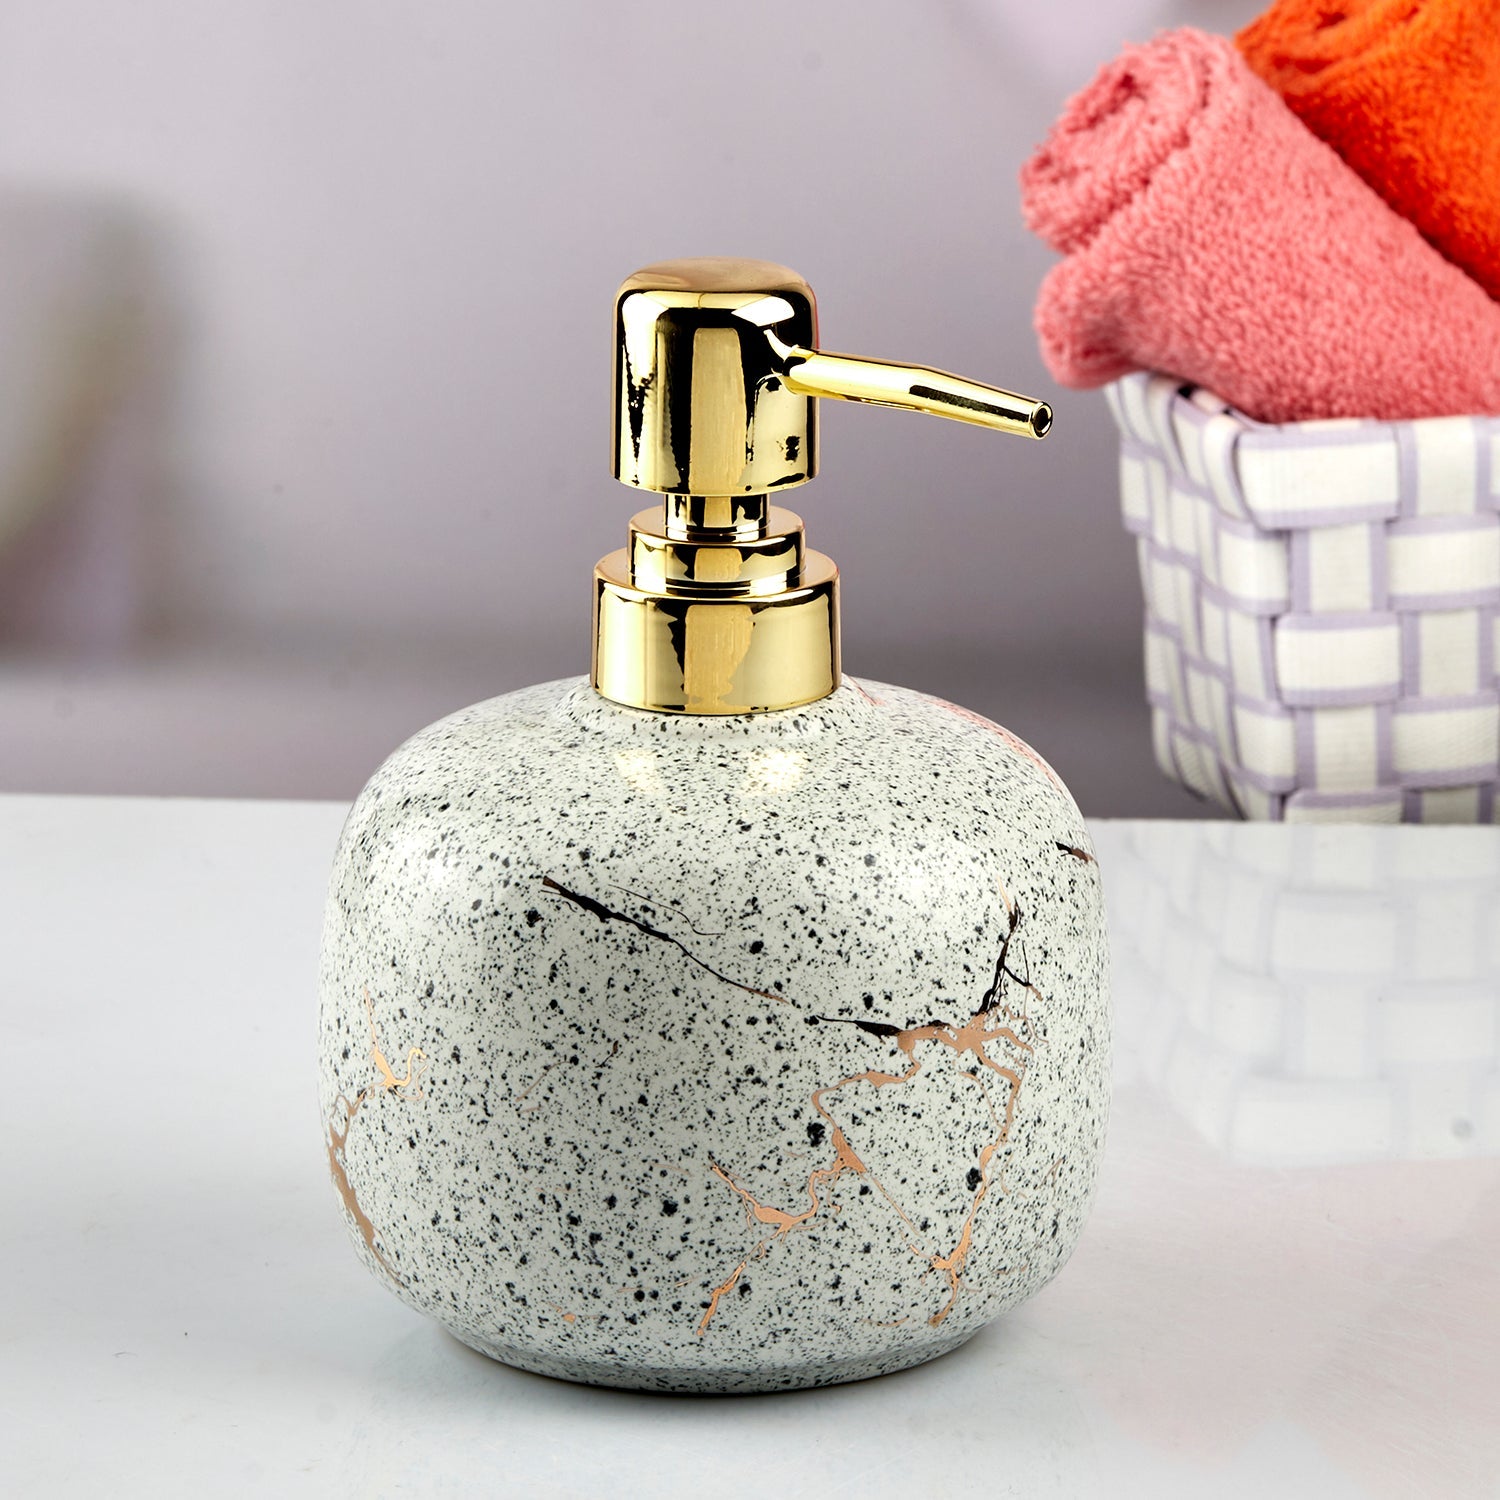 Ceramic Soap Dispenser liquid handwash pump for Bathroom, Set of 1, White (10602)